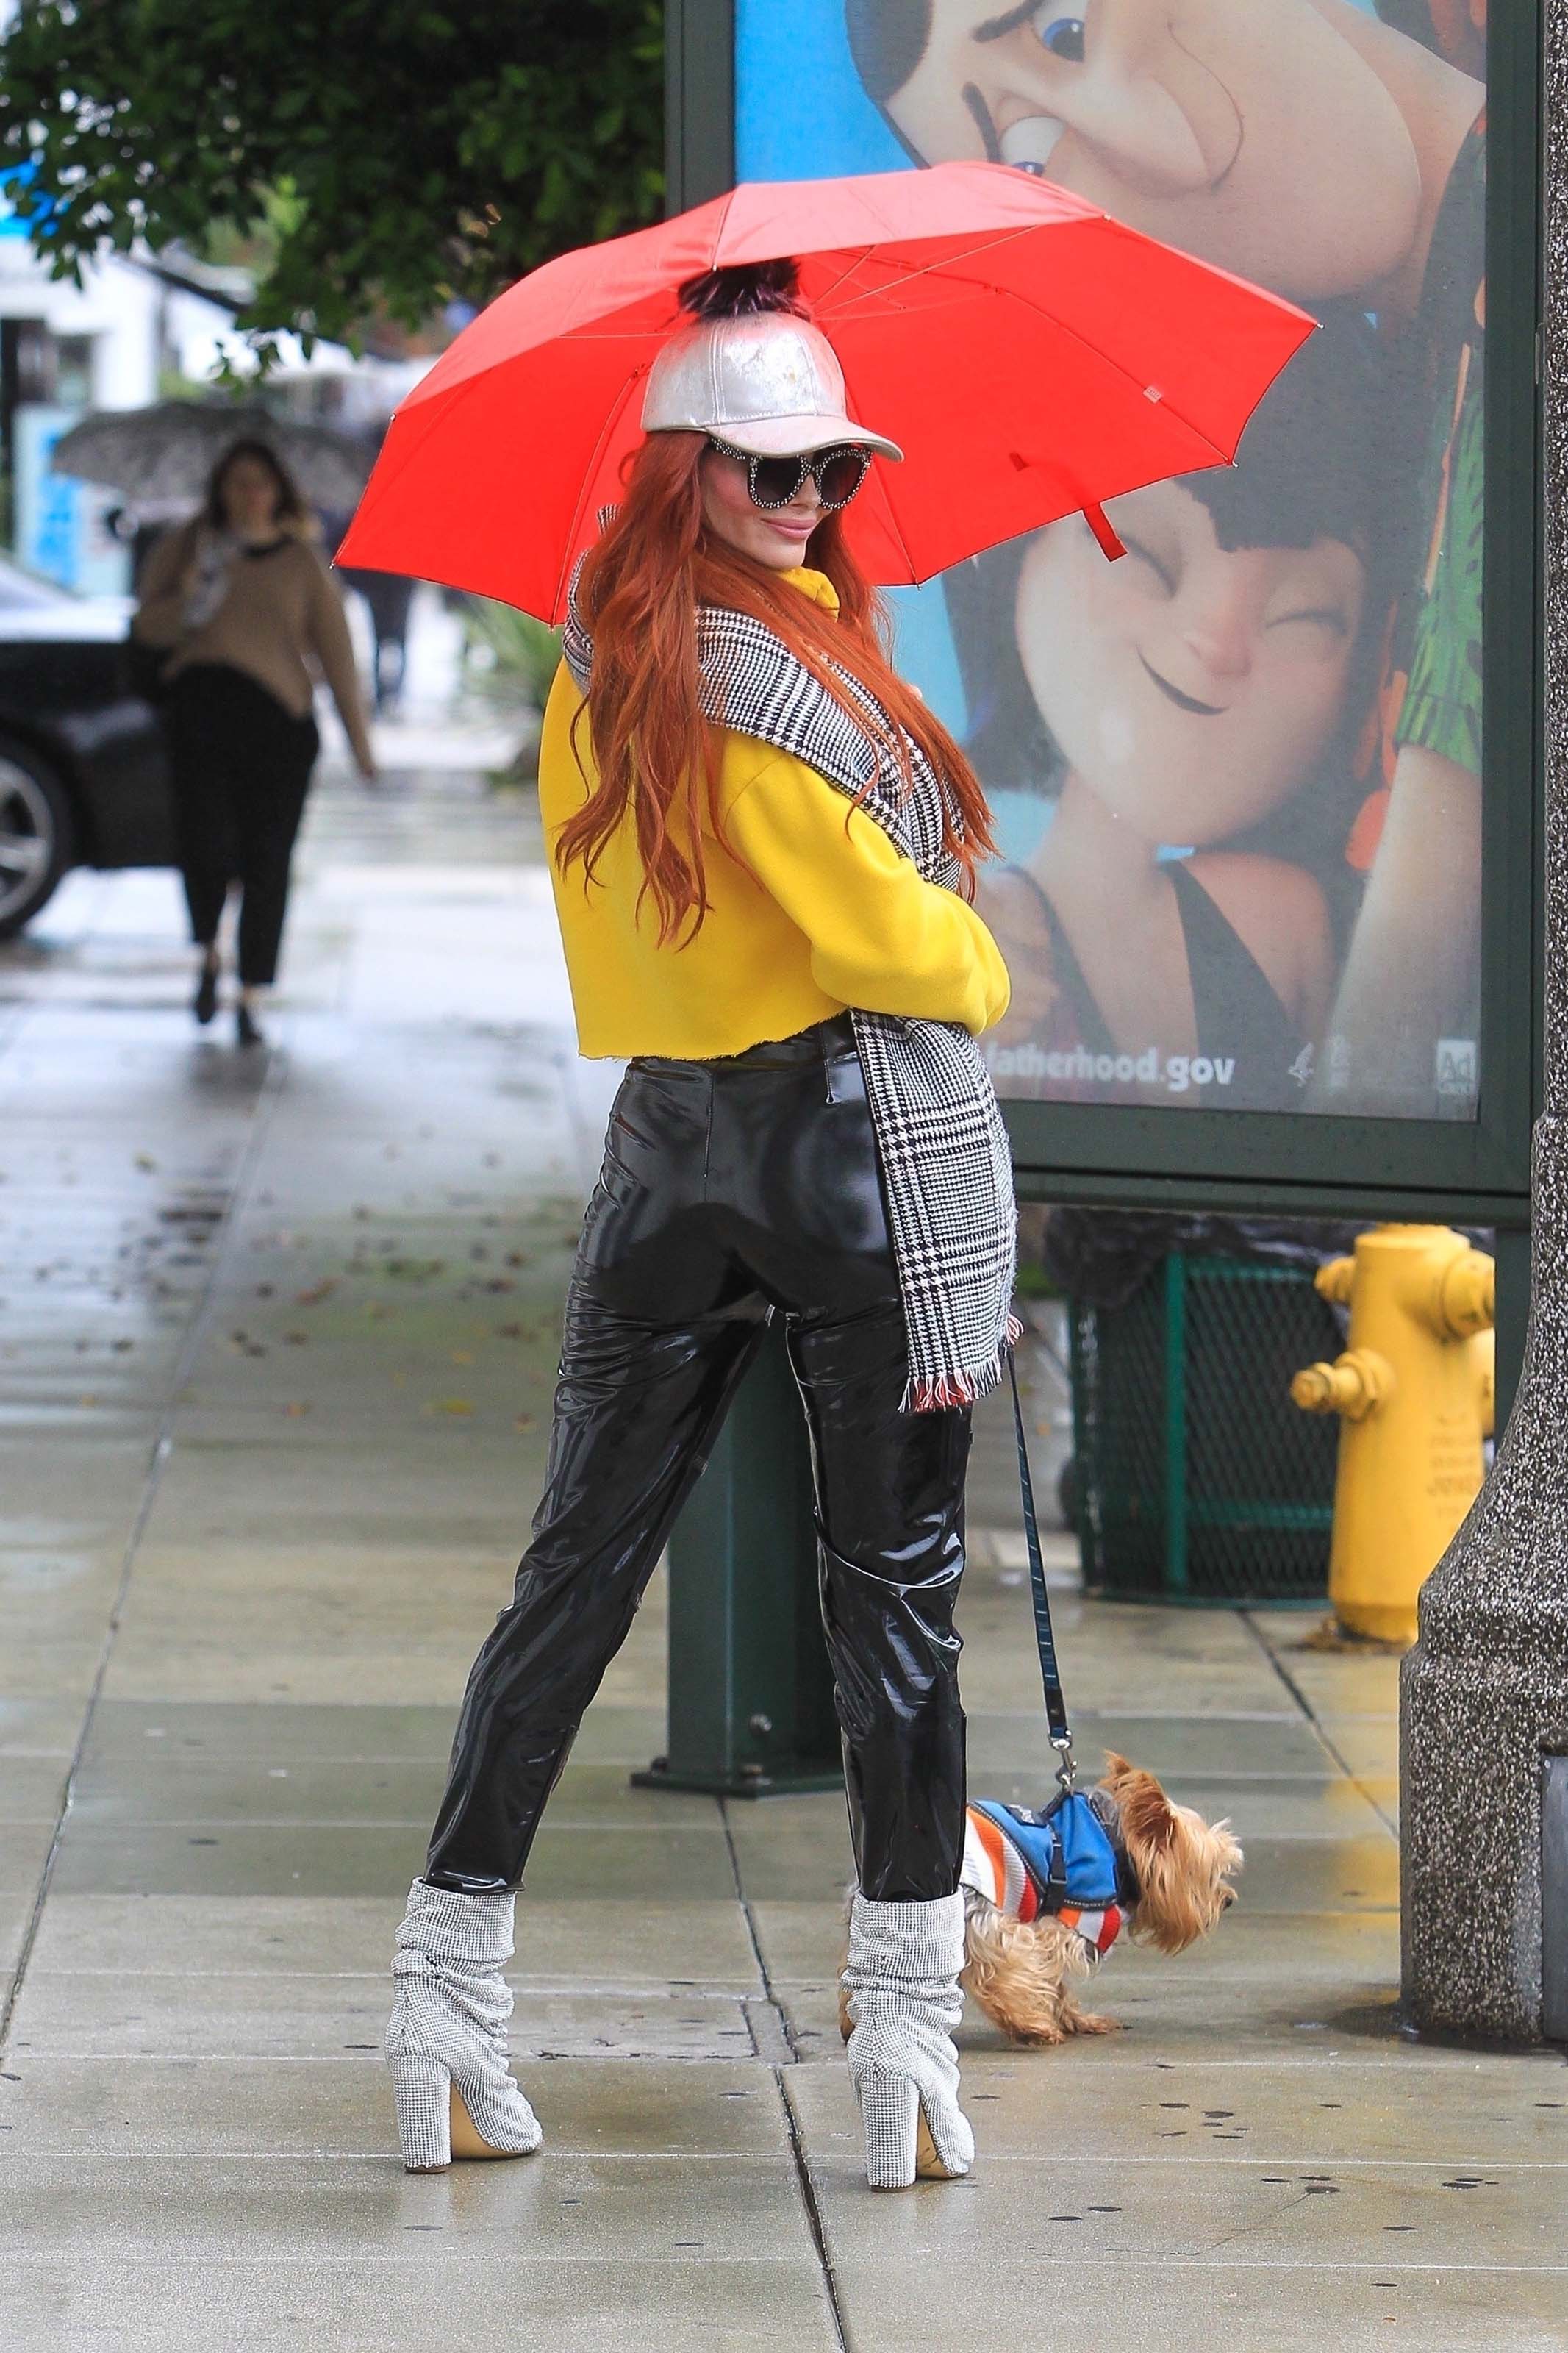 Phoebe Price takes her dog shopping